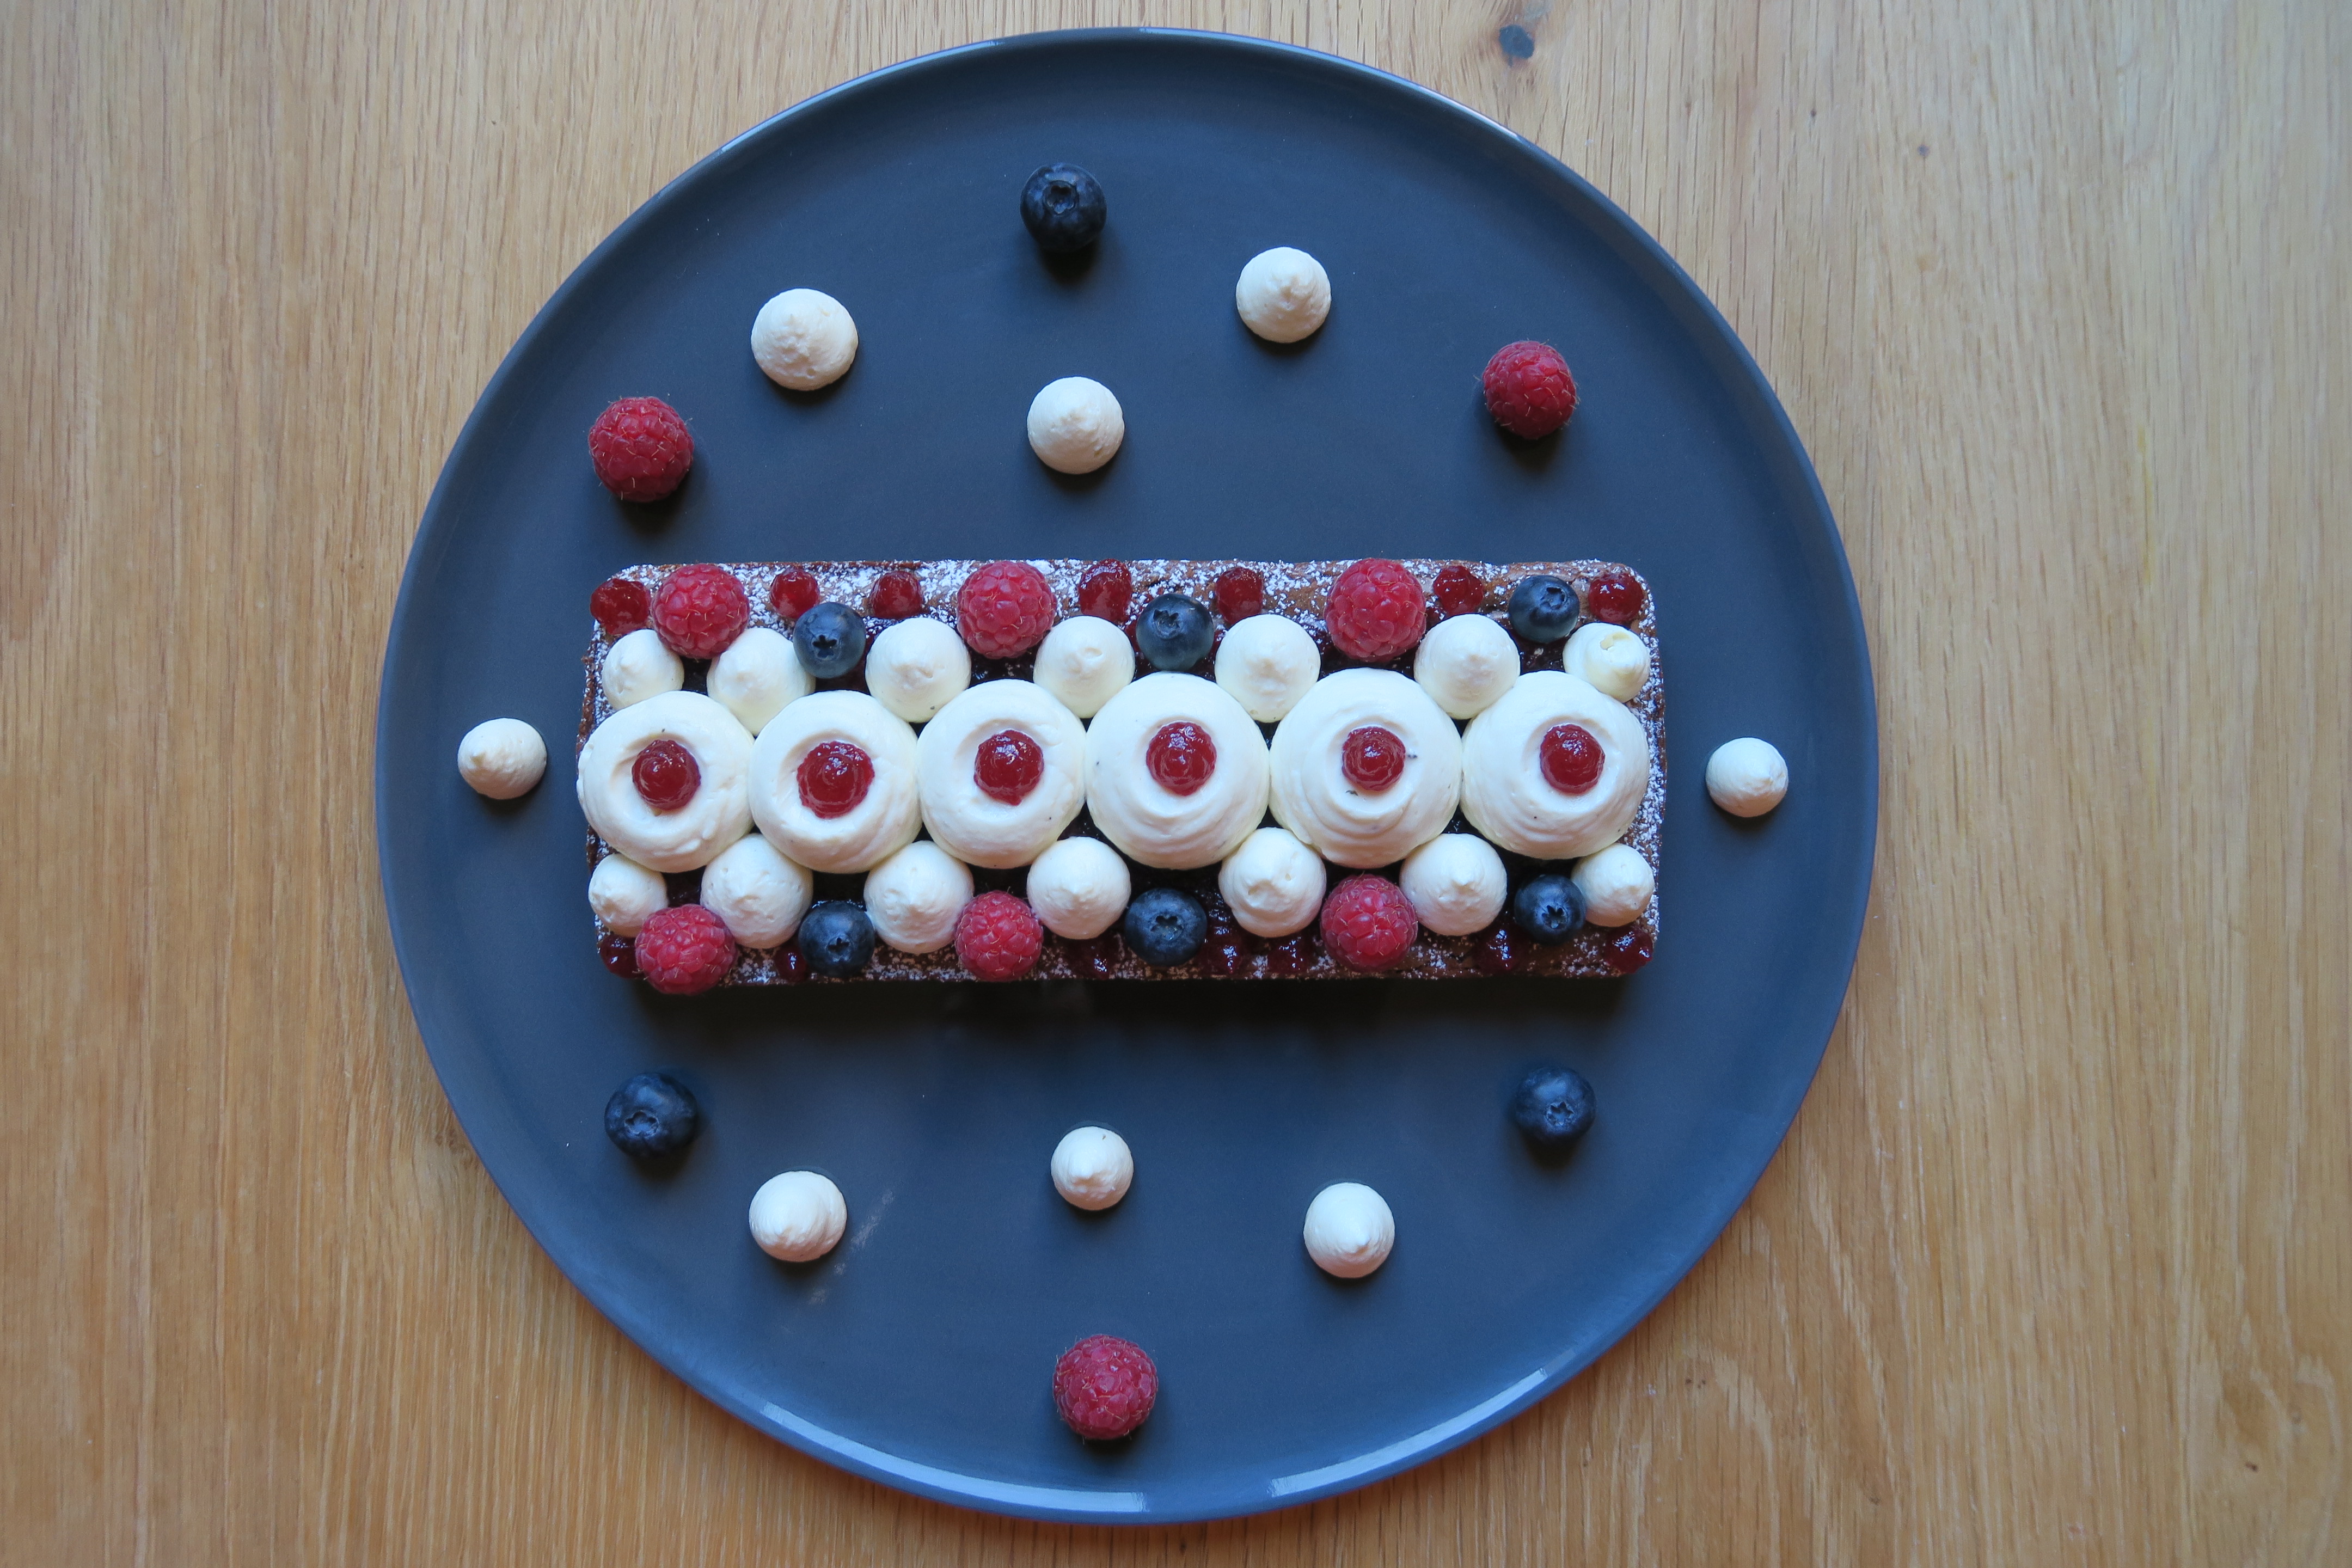 Recette Cake Chocolat, Thé Vert, Fruits Rouges, d'après Christophe Michalak - Pinky Cake